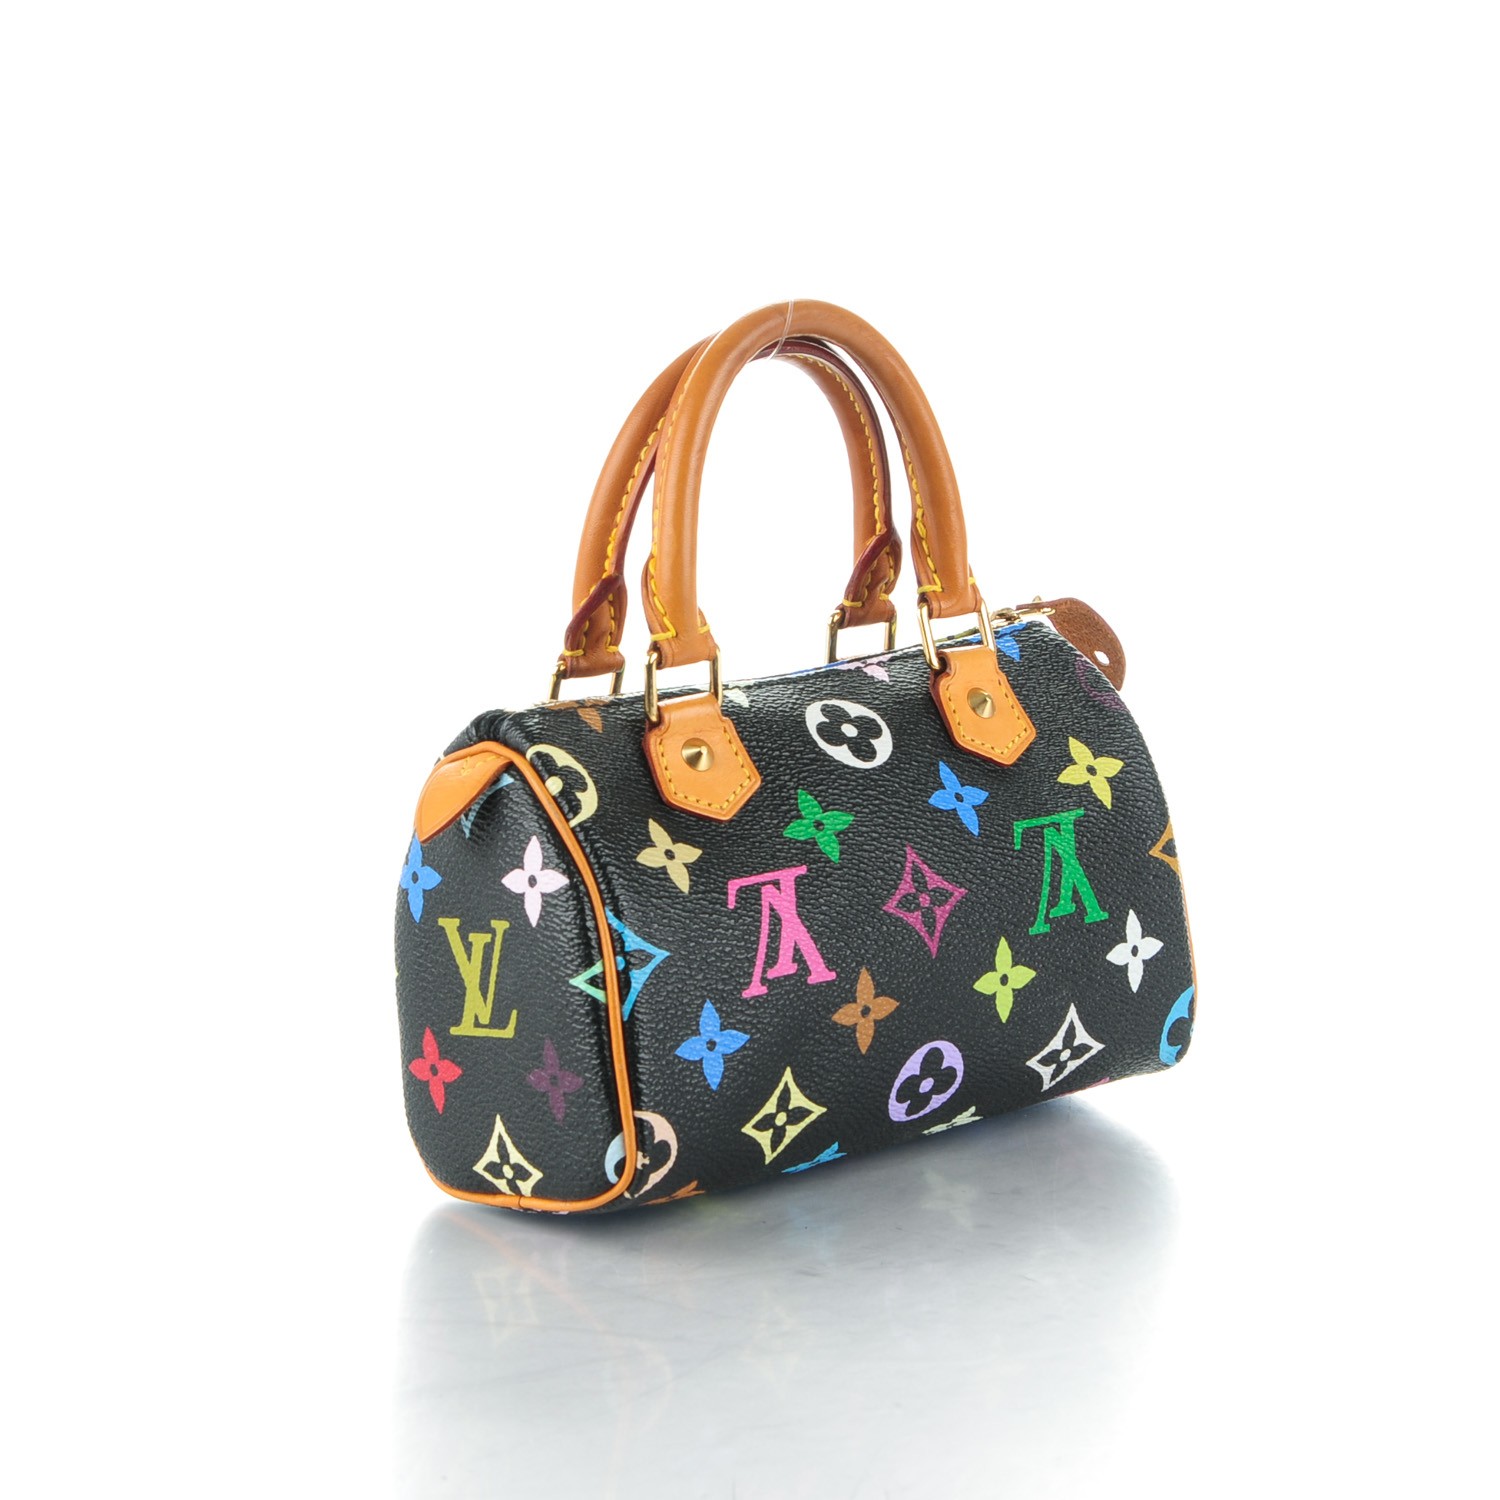 Le sac Capucines de Louis Vuitton - Stiletto